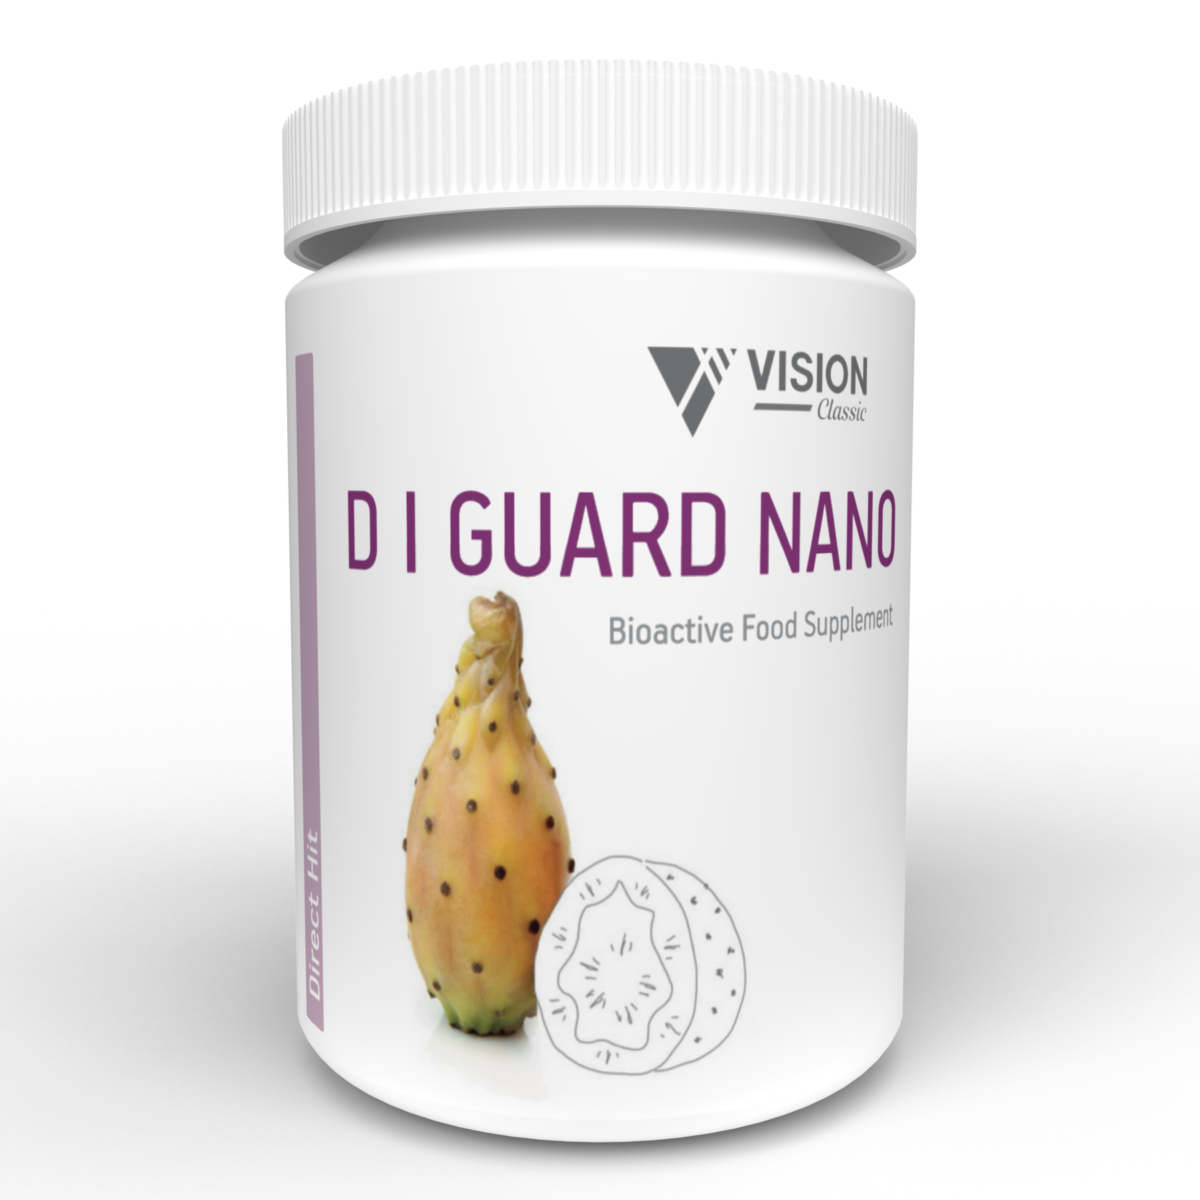 D i Guard Nano